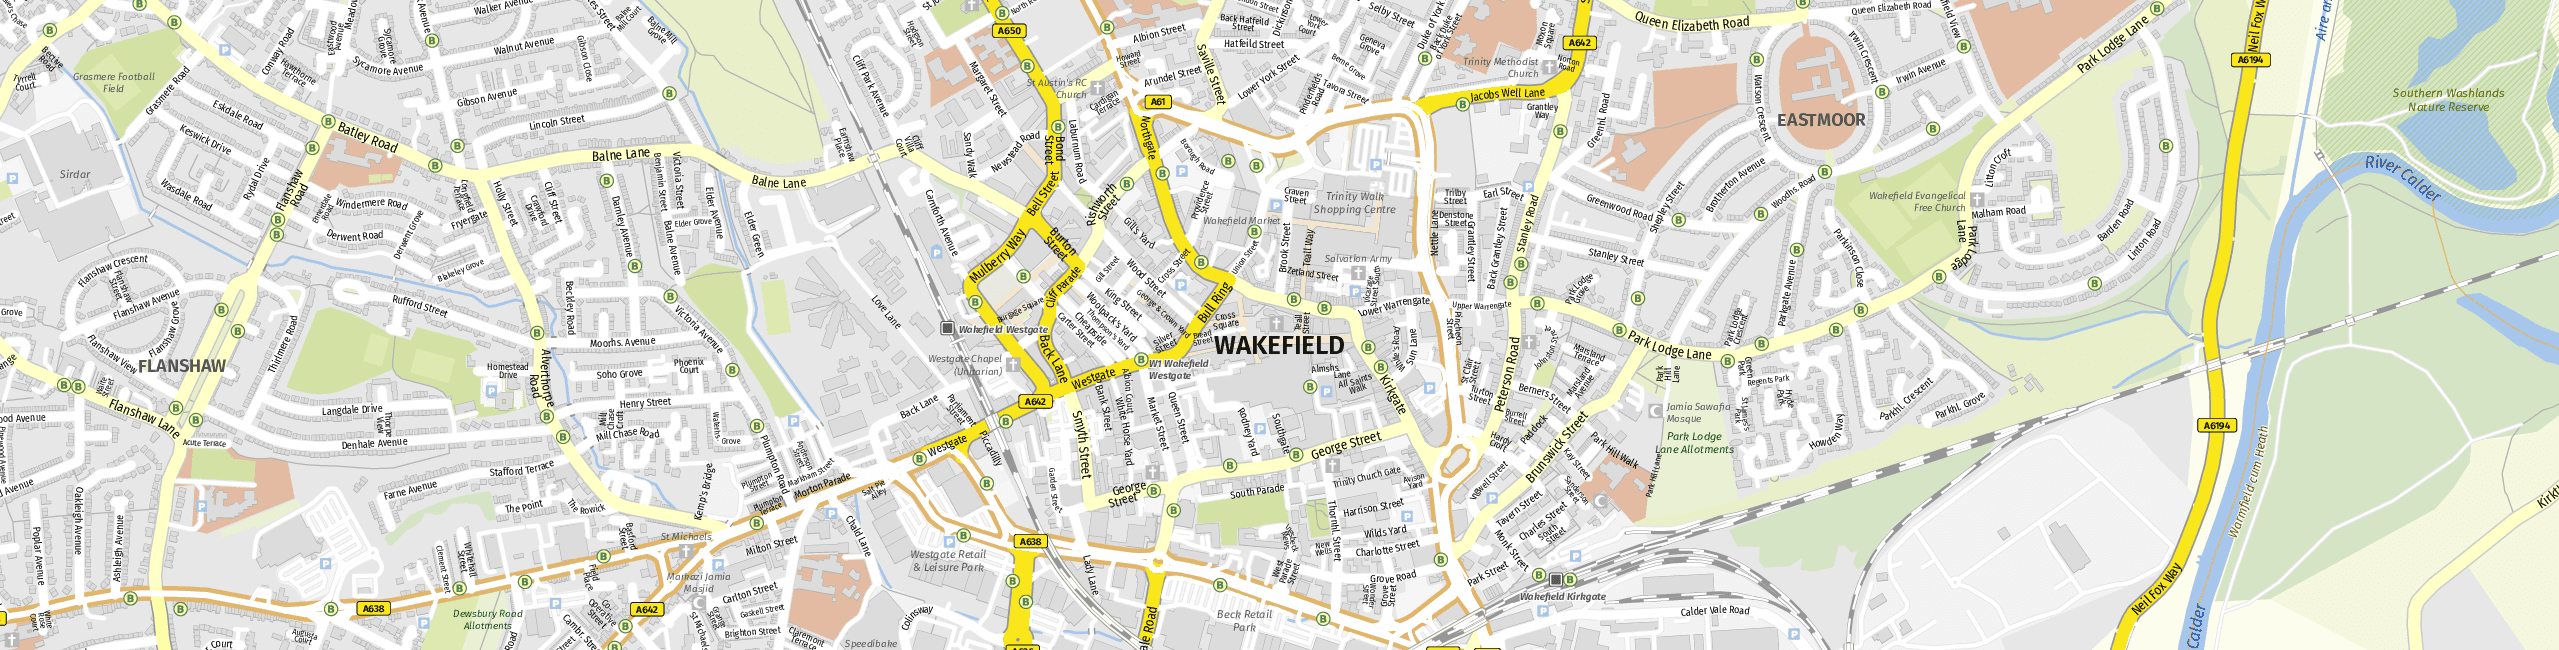 Stadtplan Wakefield zum Downloaden.